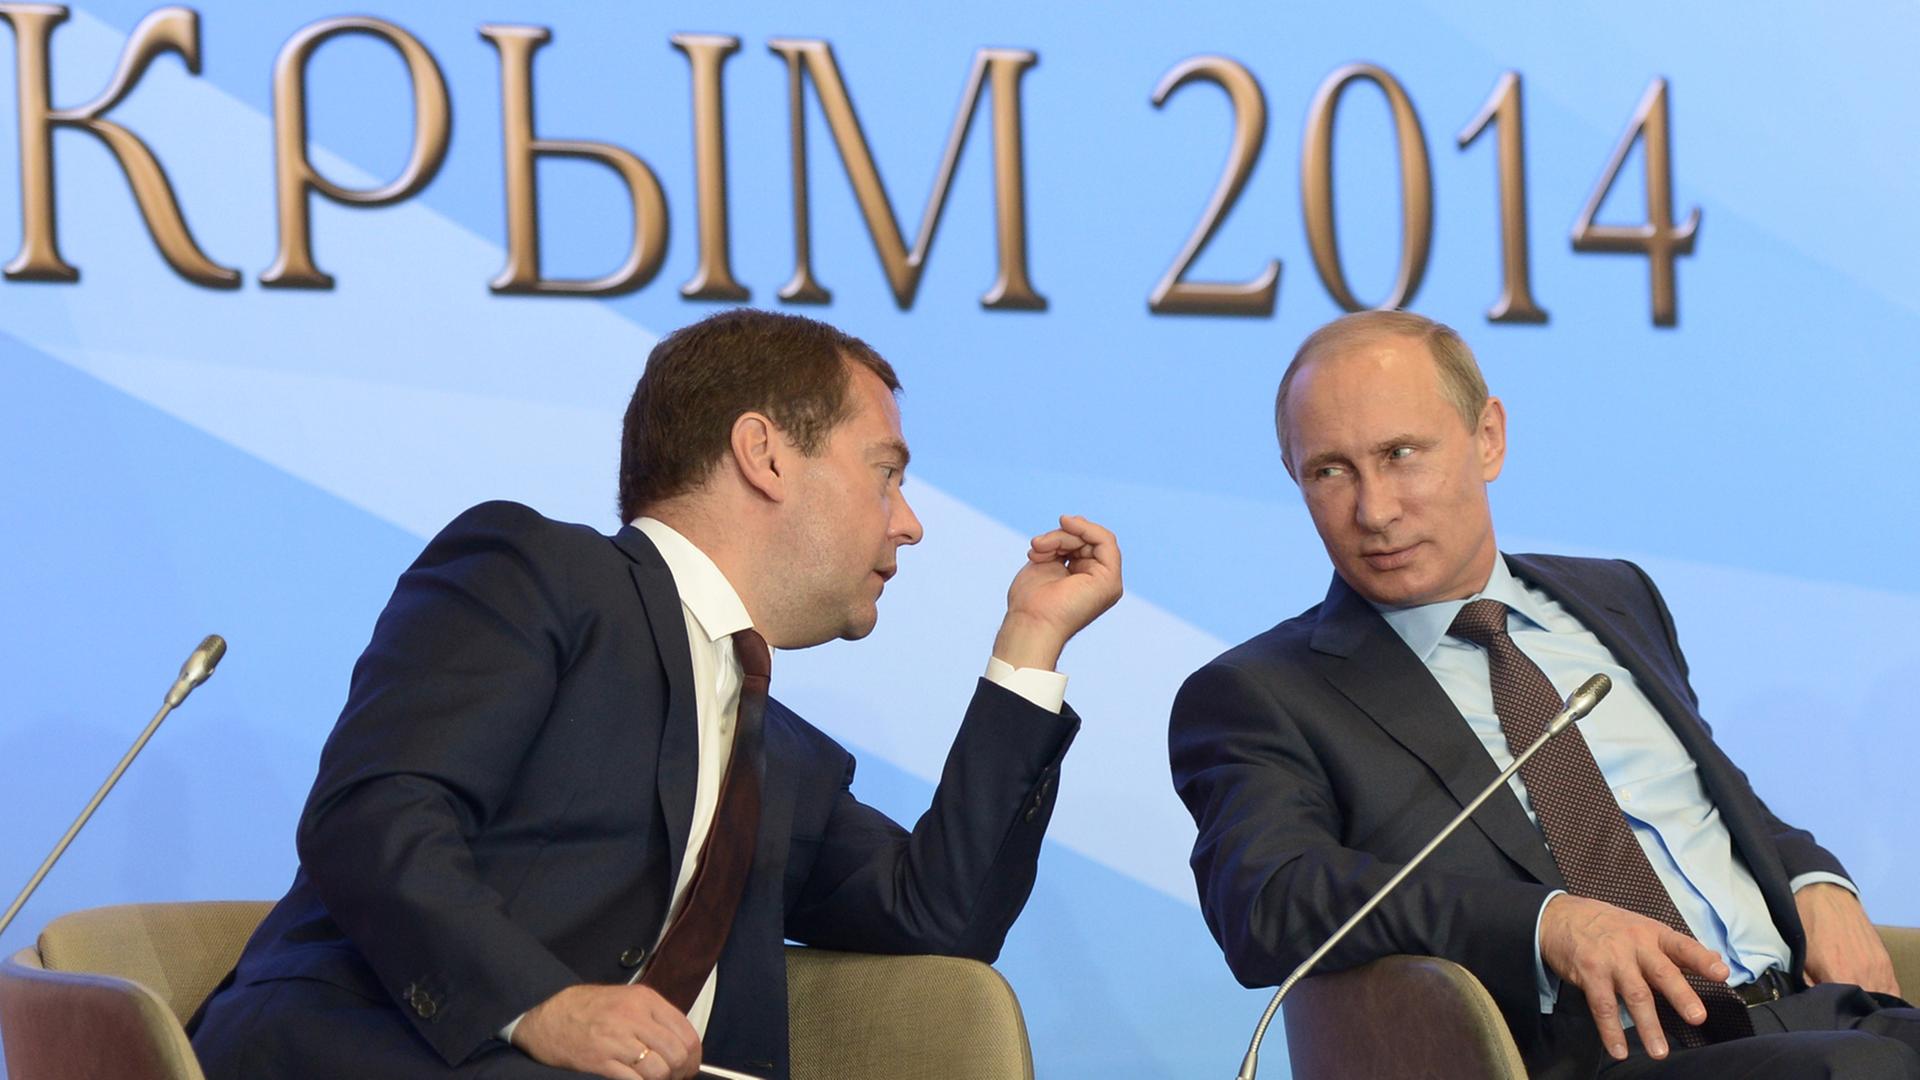 Dmitri Medwedew und Wladimir Putin im Gespräch miteinander.